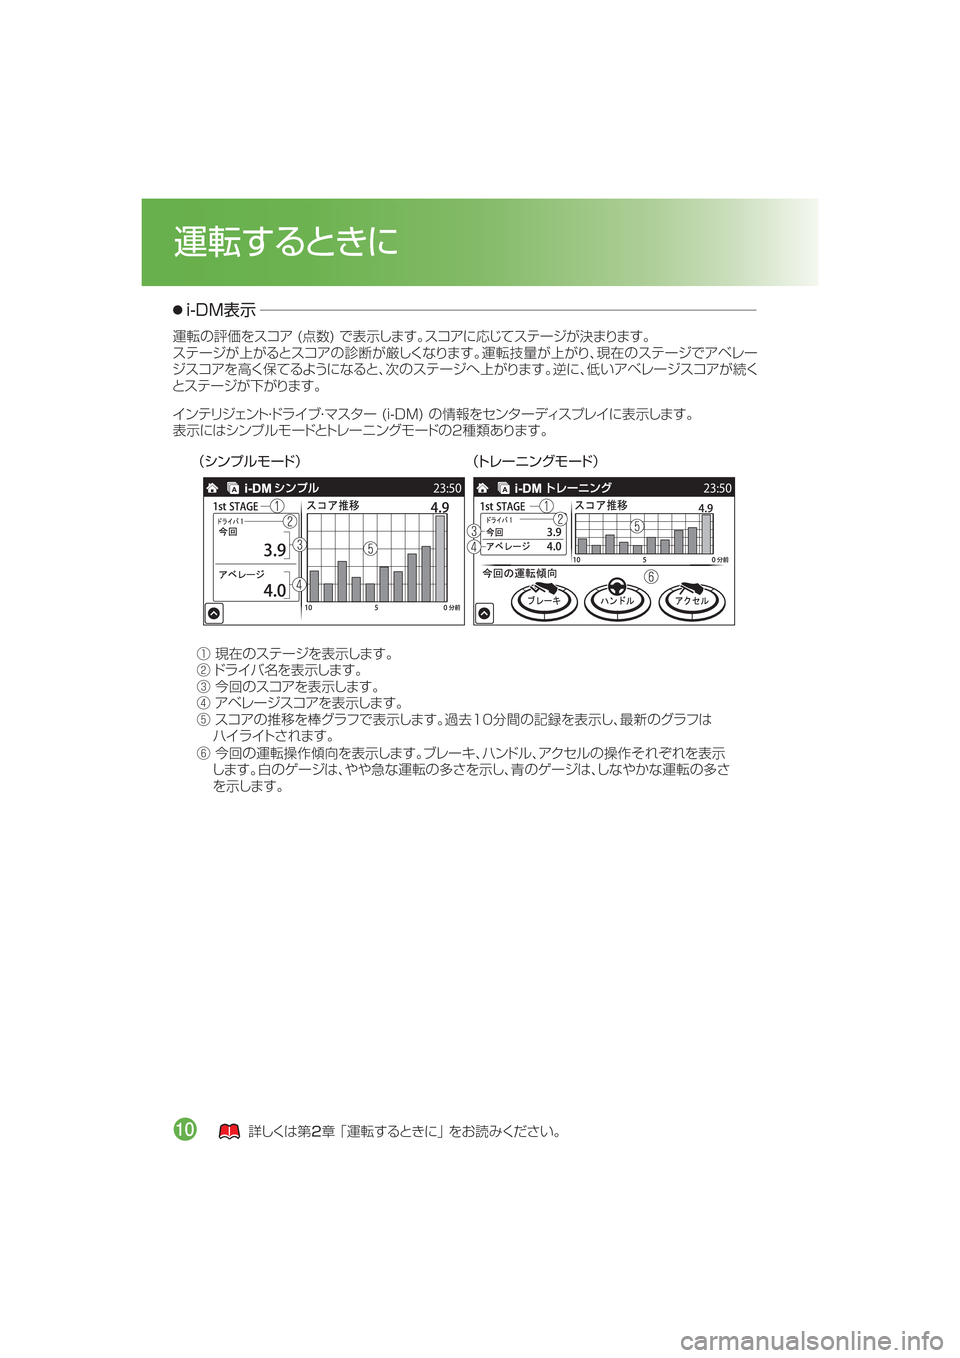 MAZDA MODEL CX-5 2015  取扱説明書 (in Japanese) ¢³ïÓçÞ”Å£ ¢Äè”Çï¬Þ”Å£
